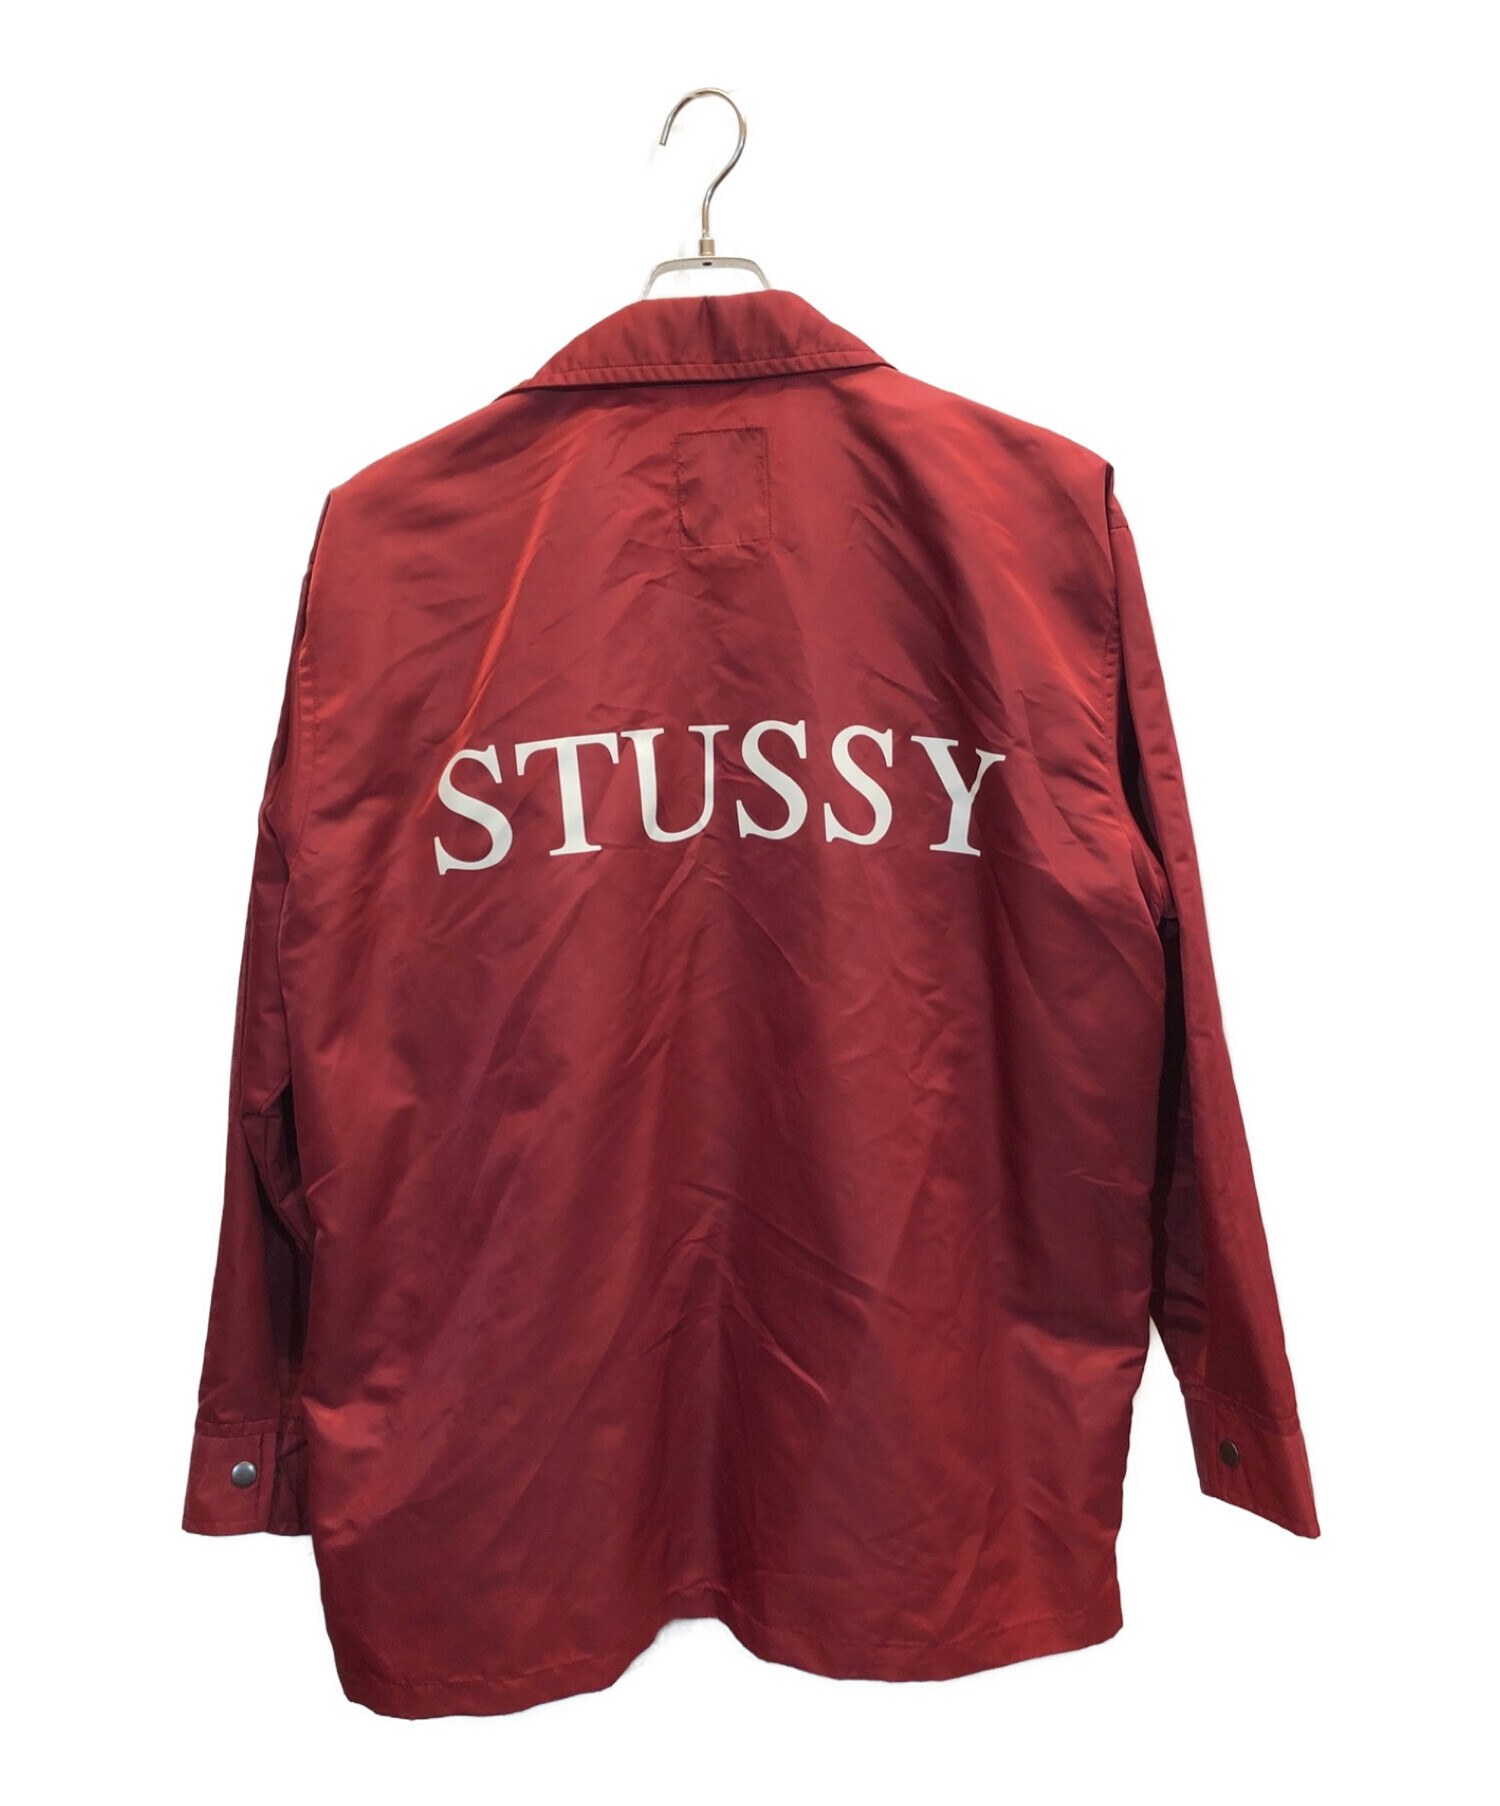 stussy (ステューシー) [古着]90s バックロゴ コーチジャケット レッド サイズ:M